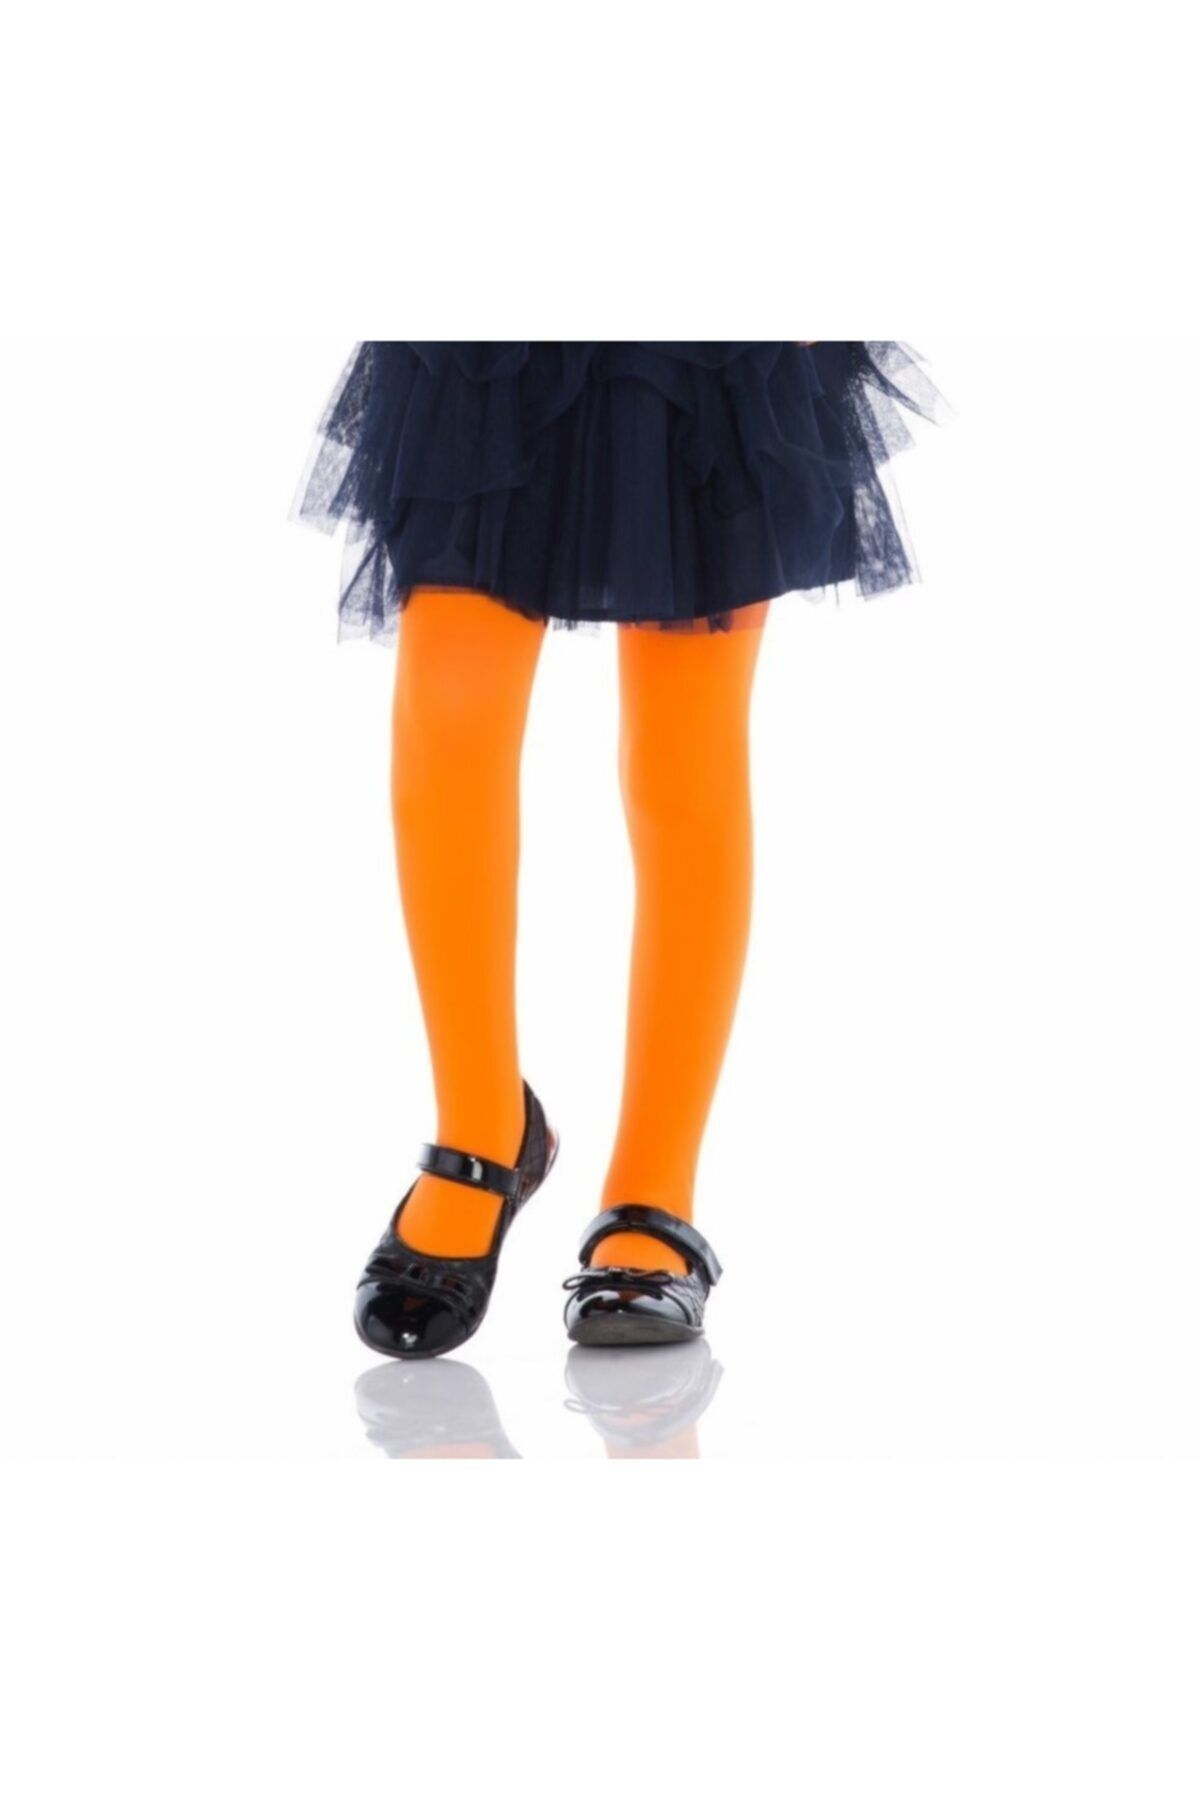 جوراب شلواری دخترانه نارنجی بچه گانه پنتی penti